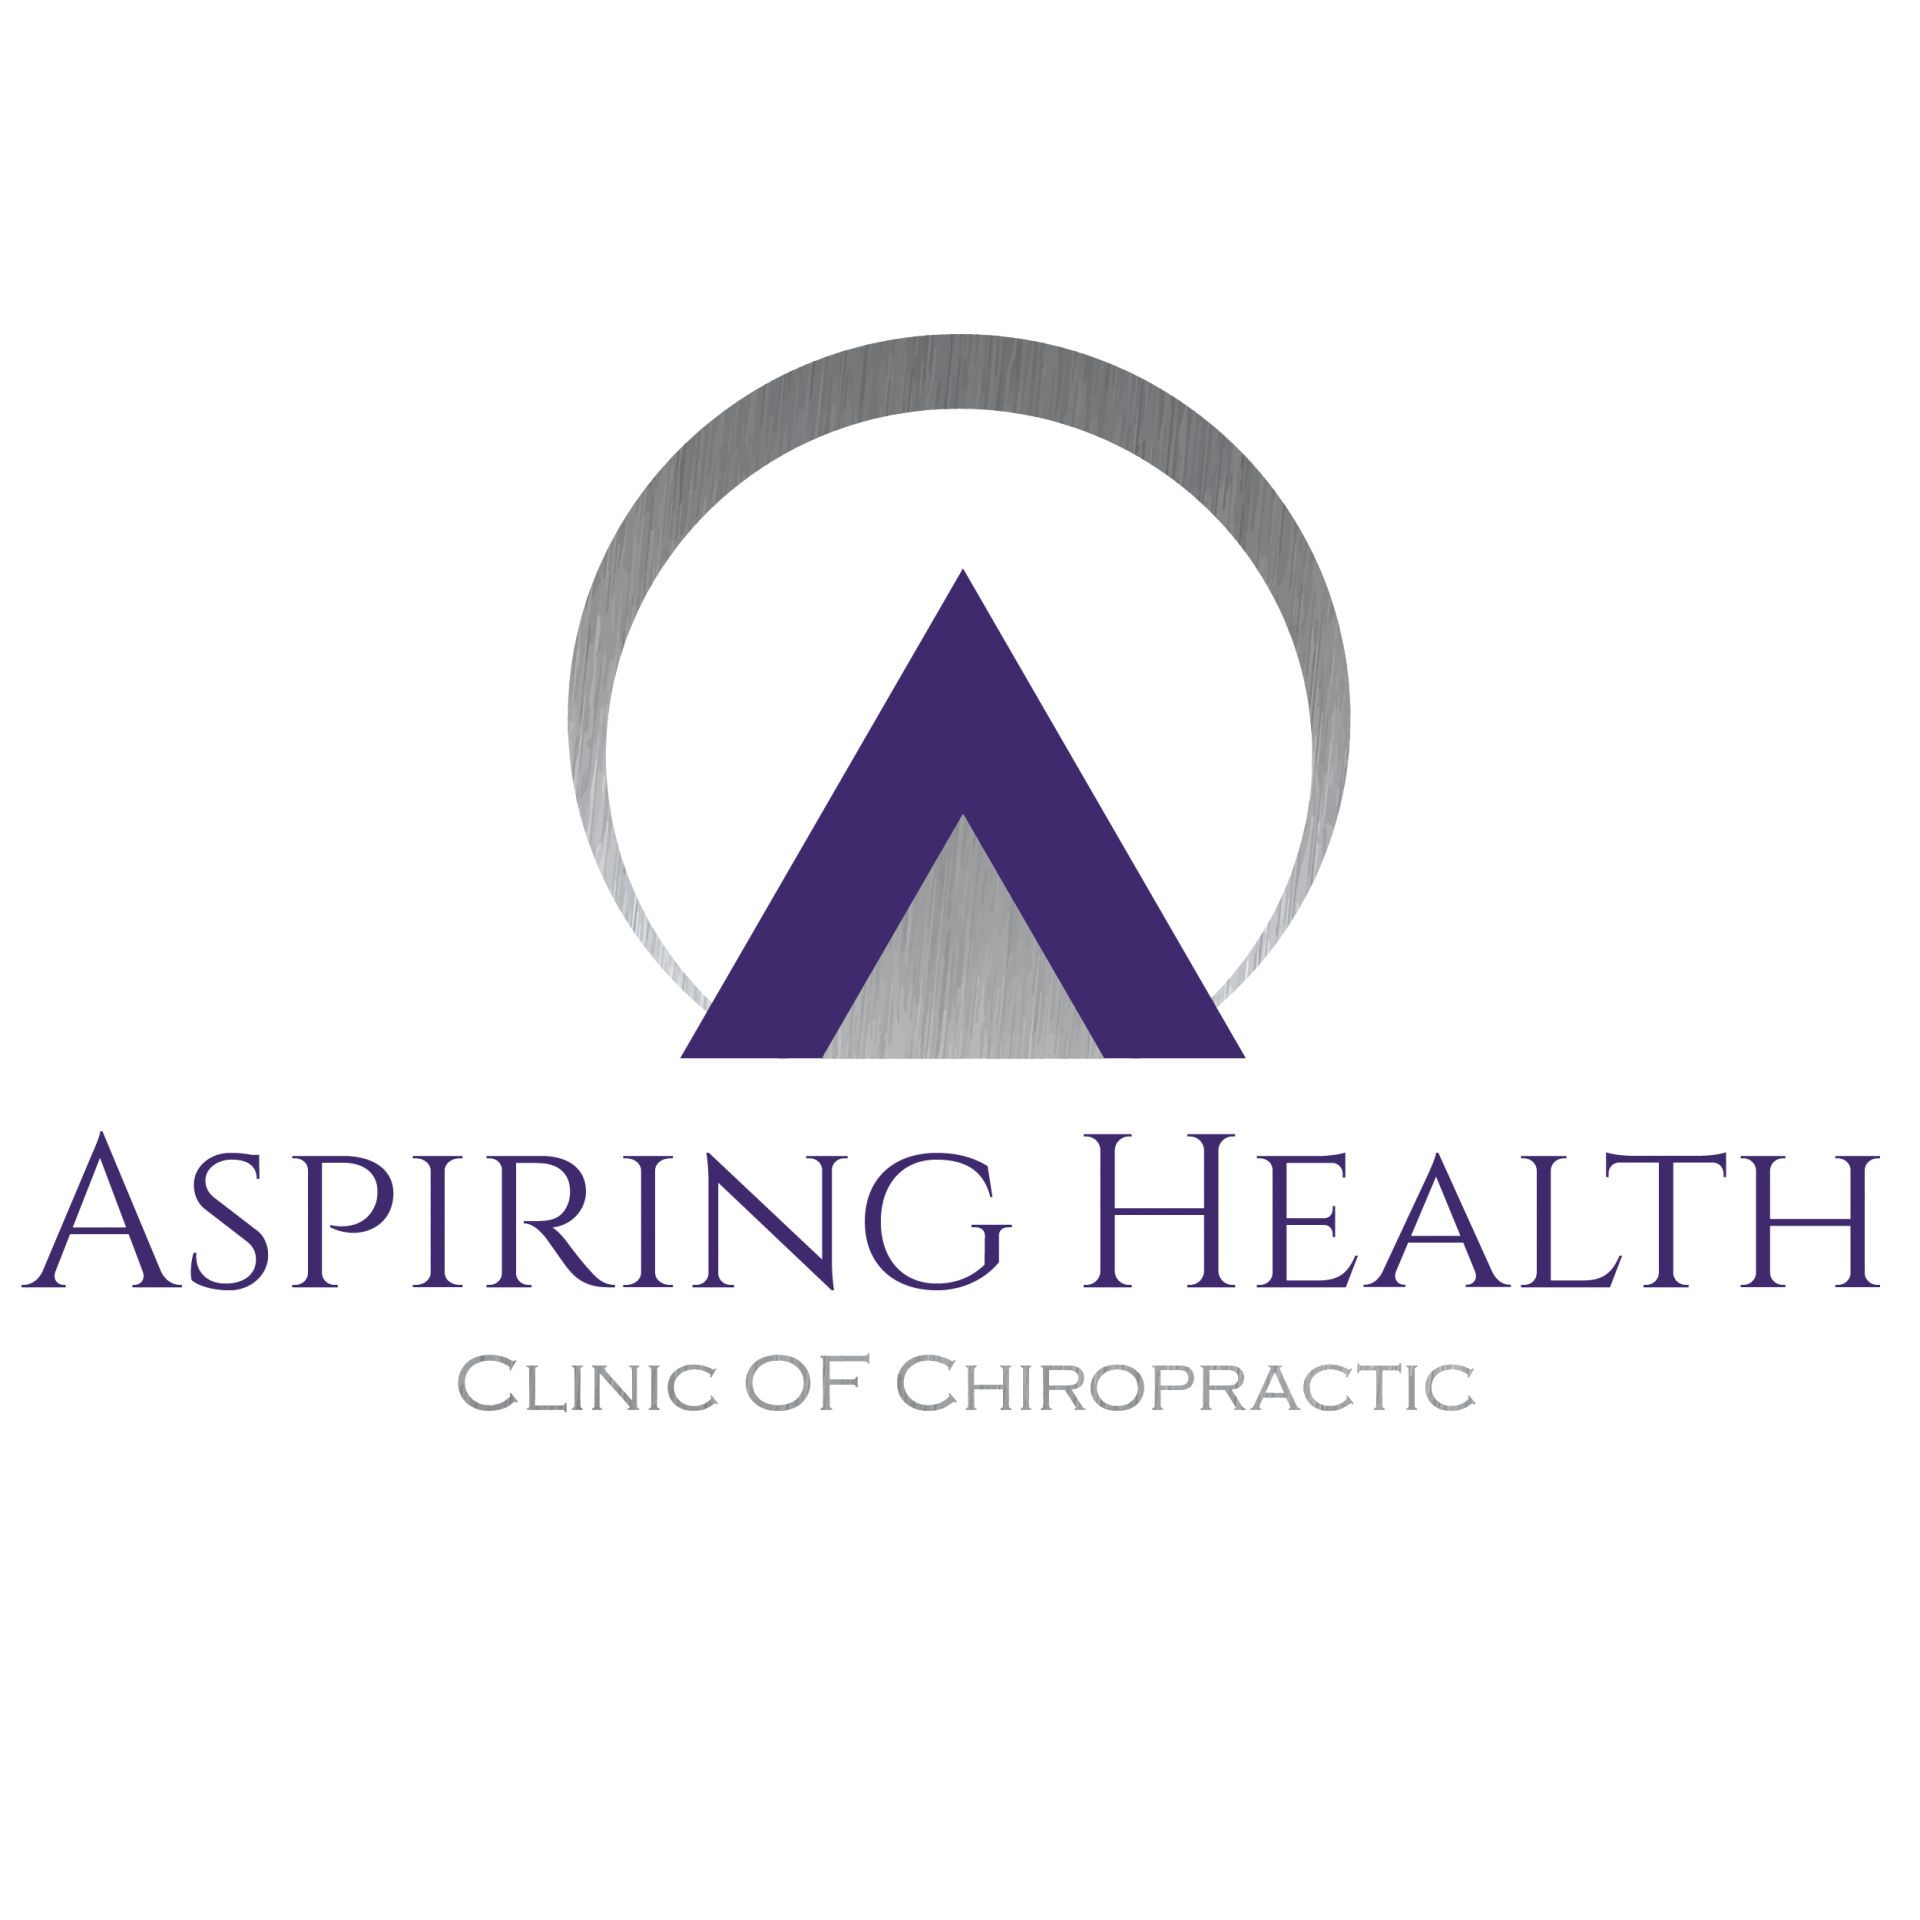 Aspiring Health Clinic